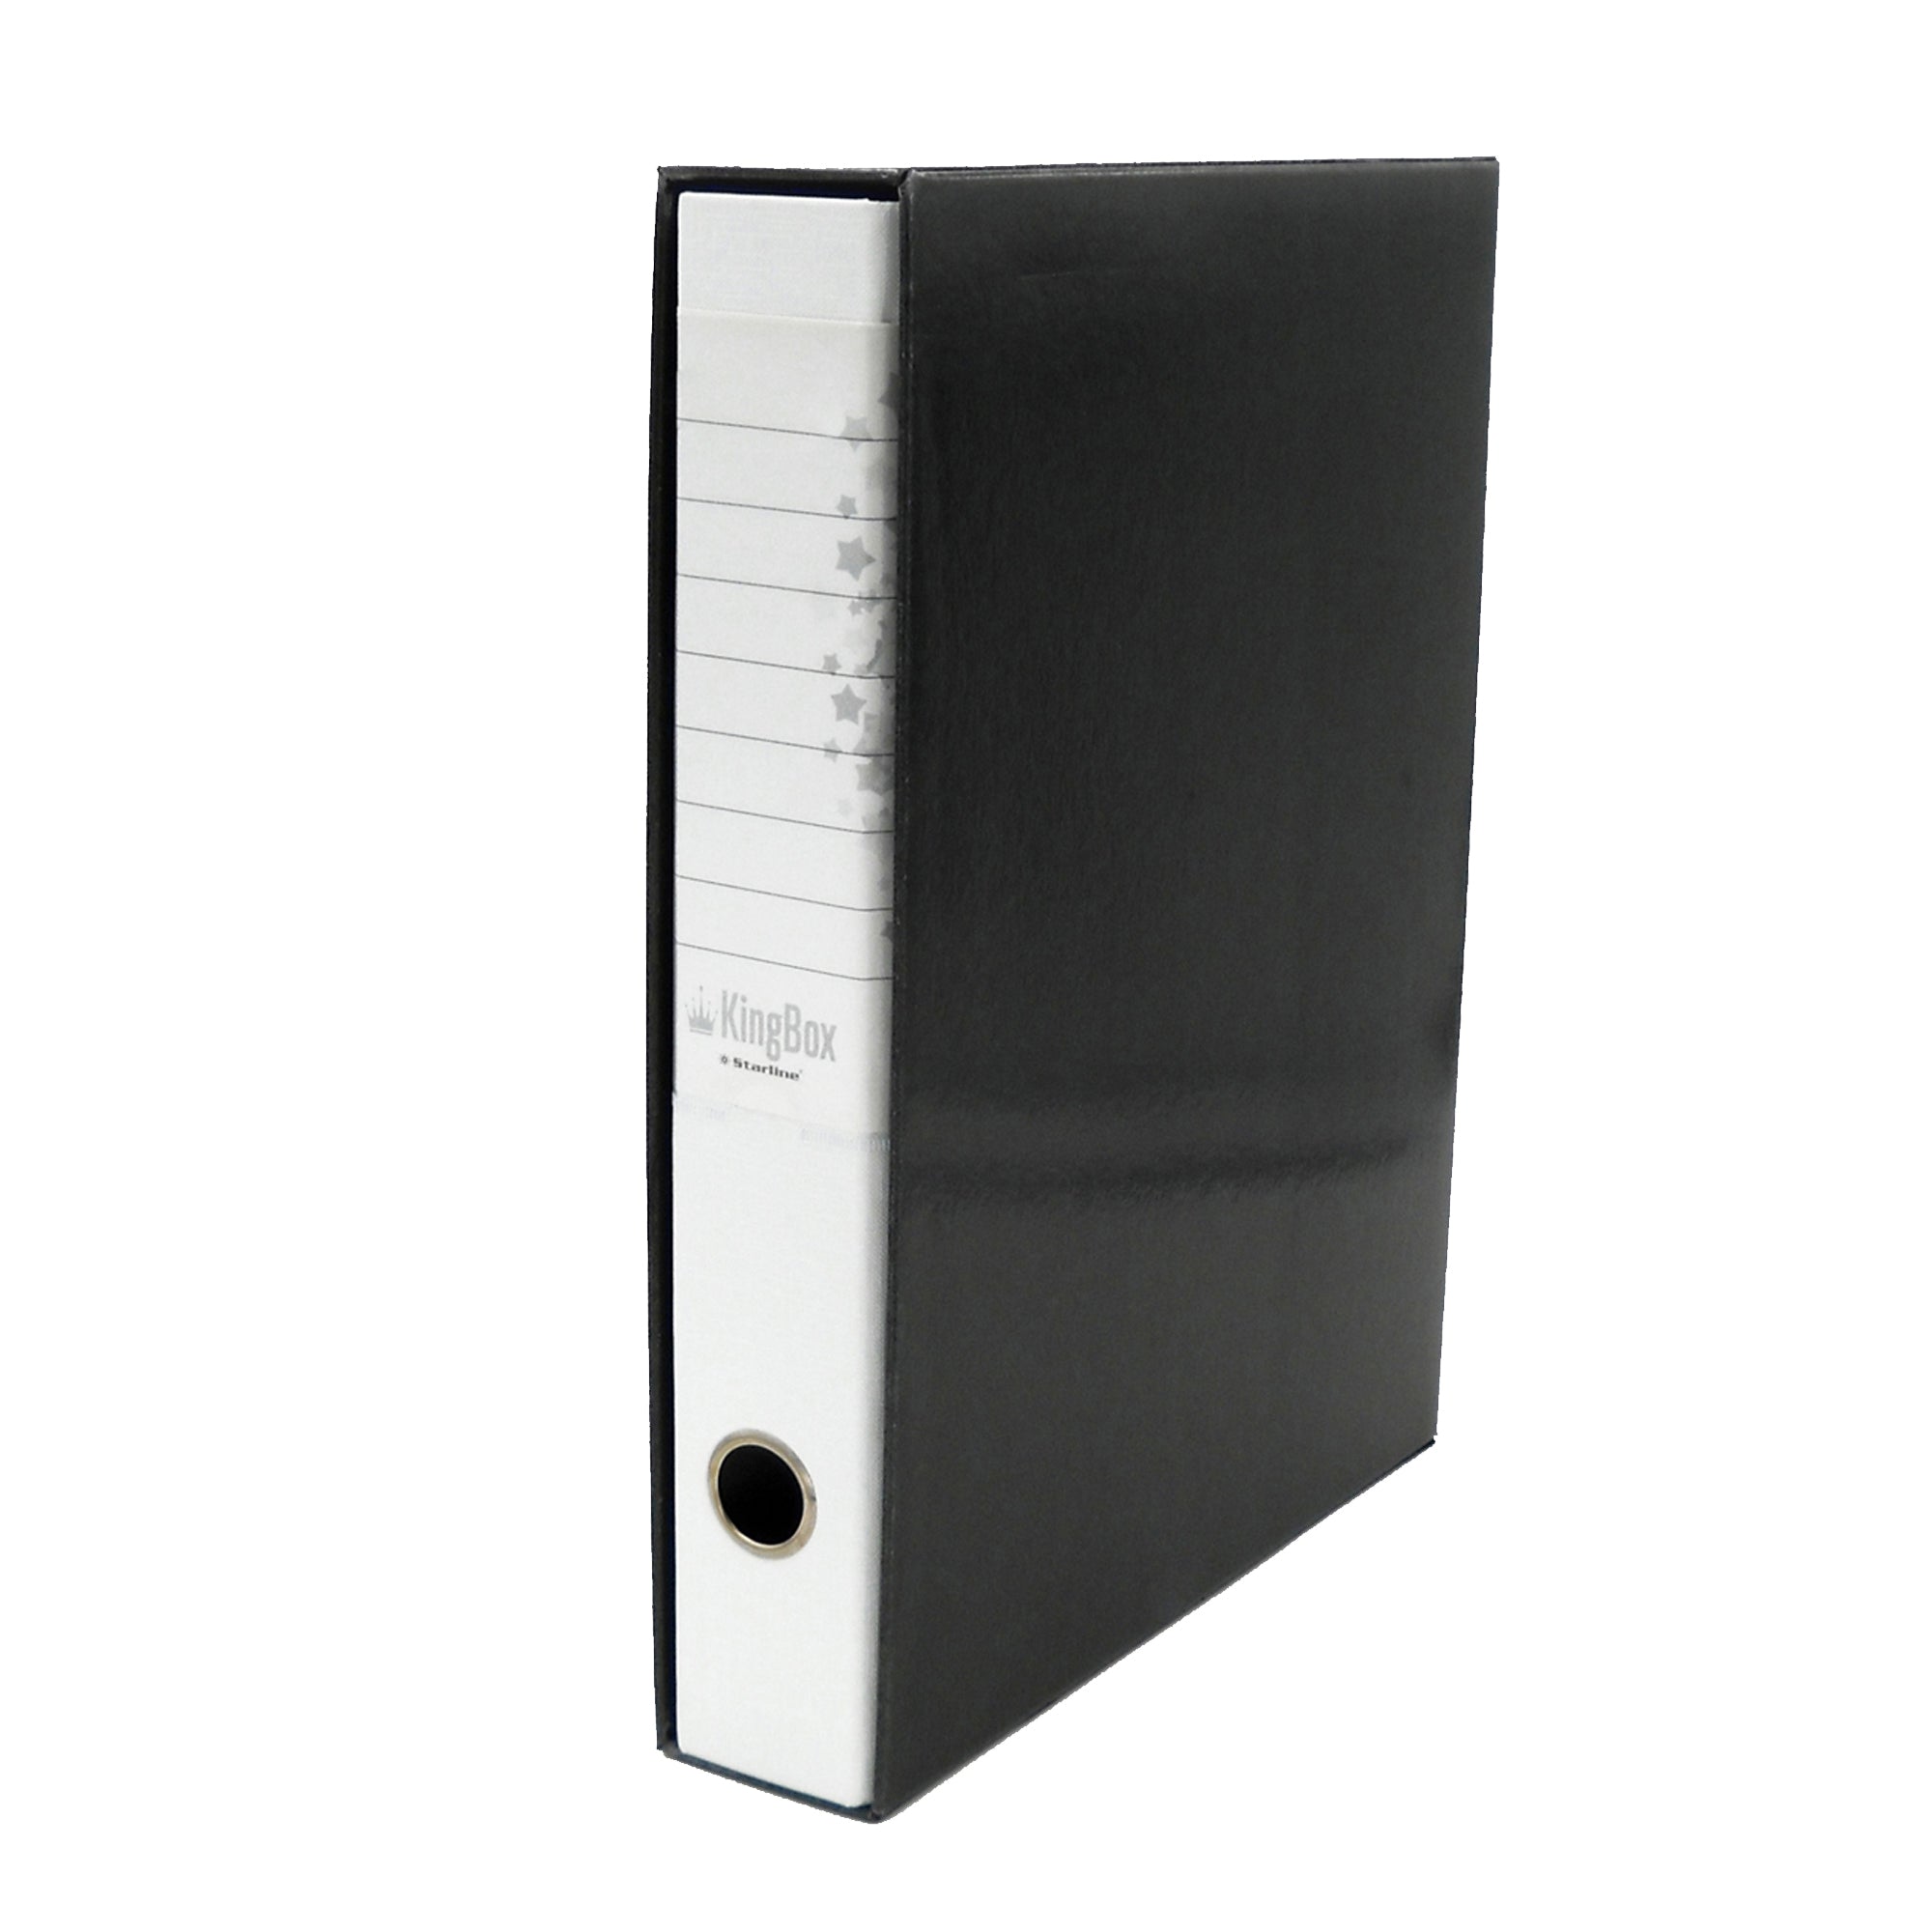 starline-registratore-kingbox-f-to-protocollo-dorso-5cm-bianco